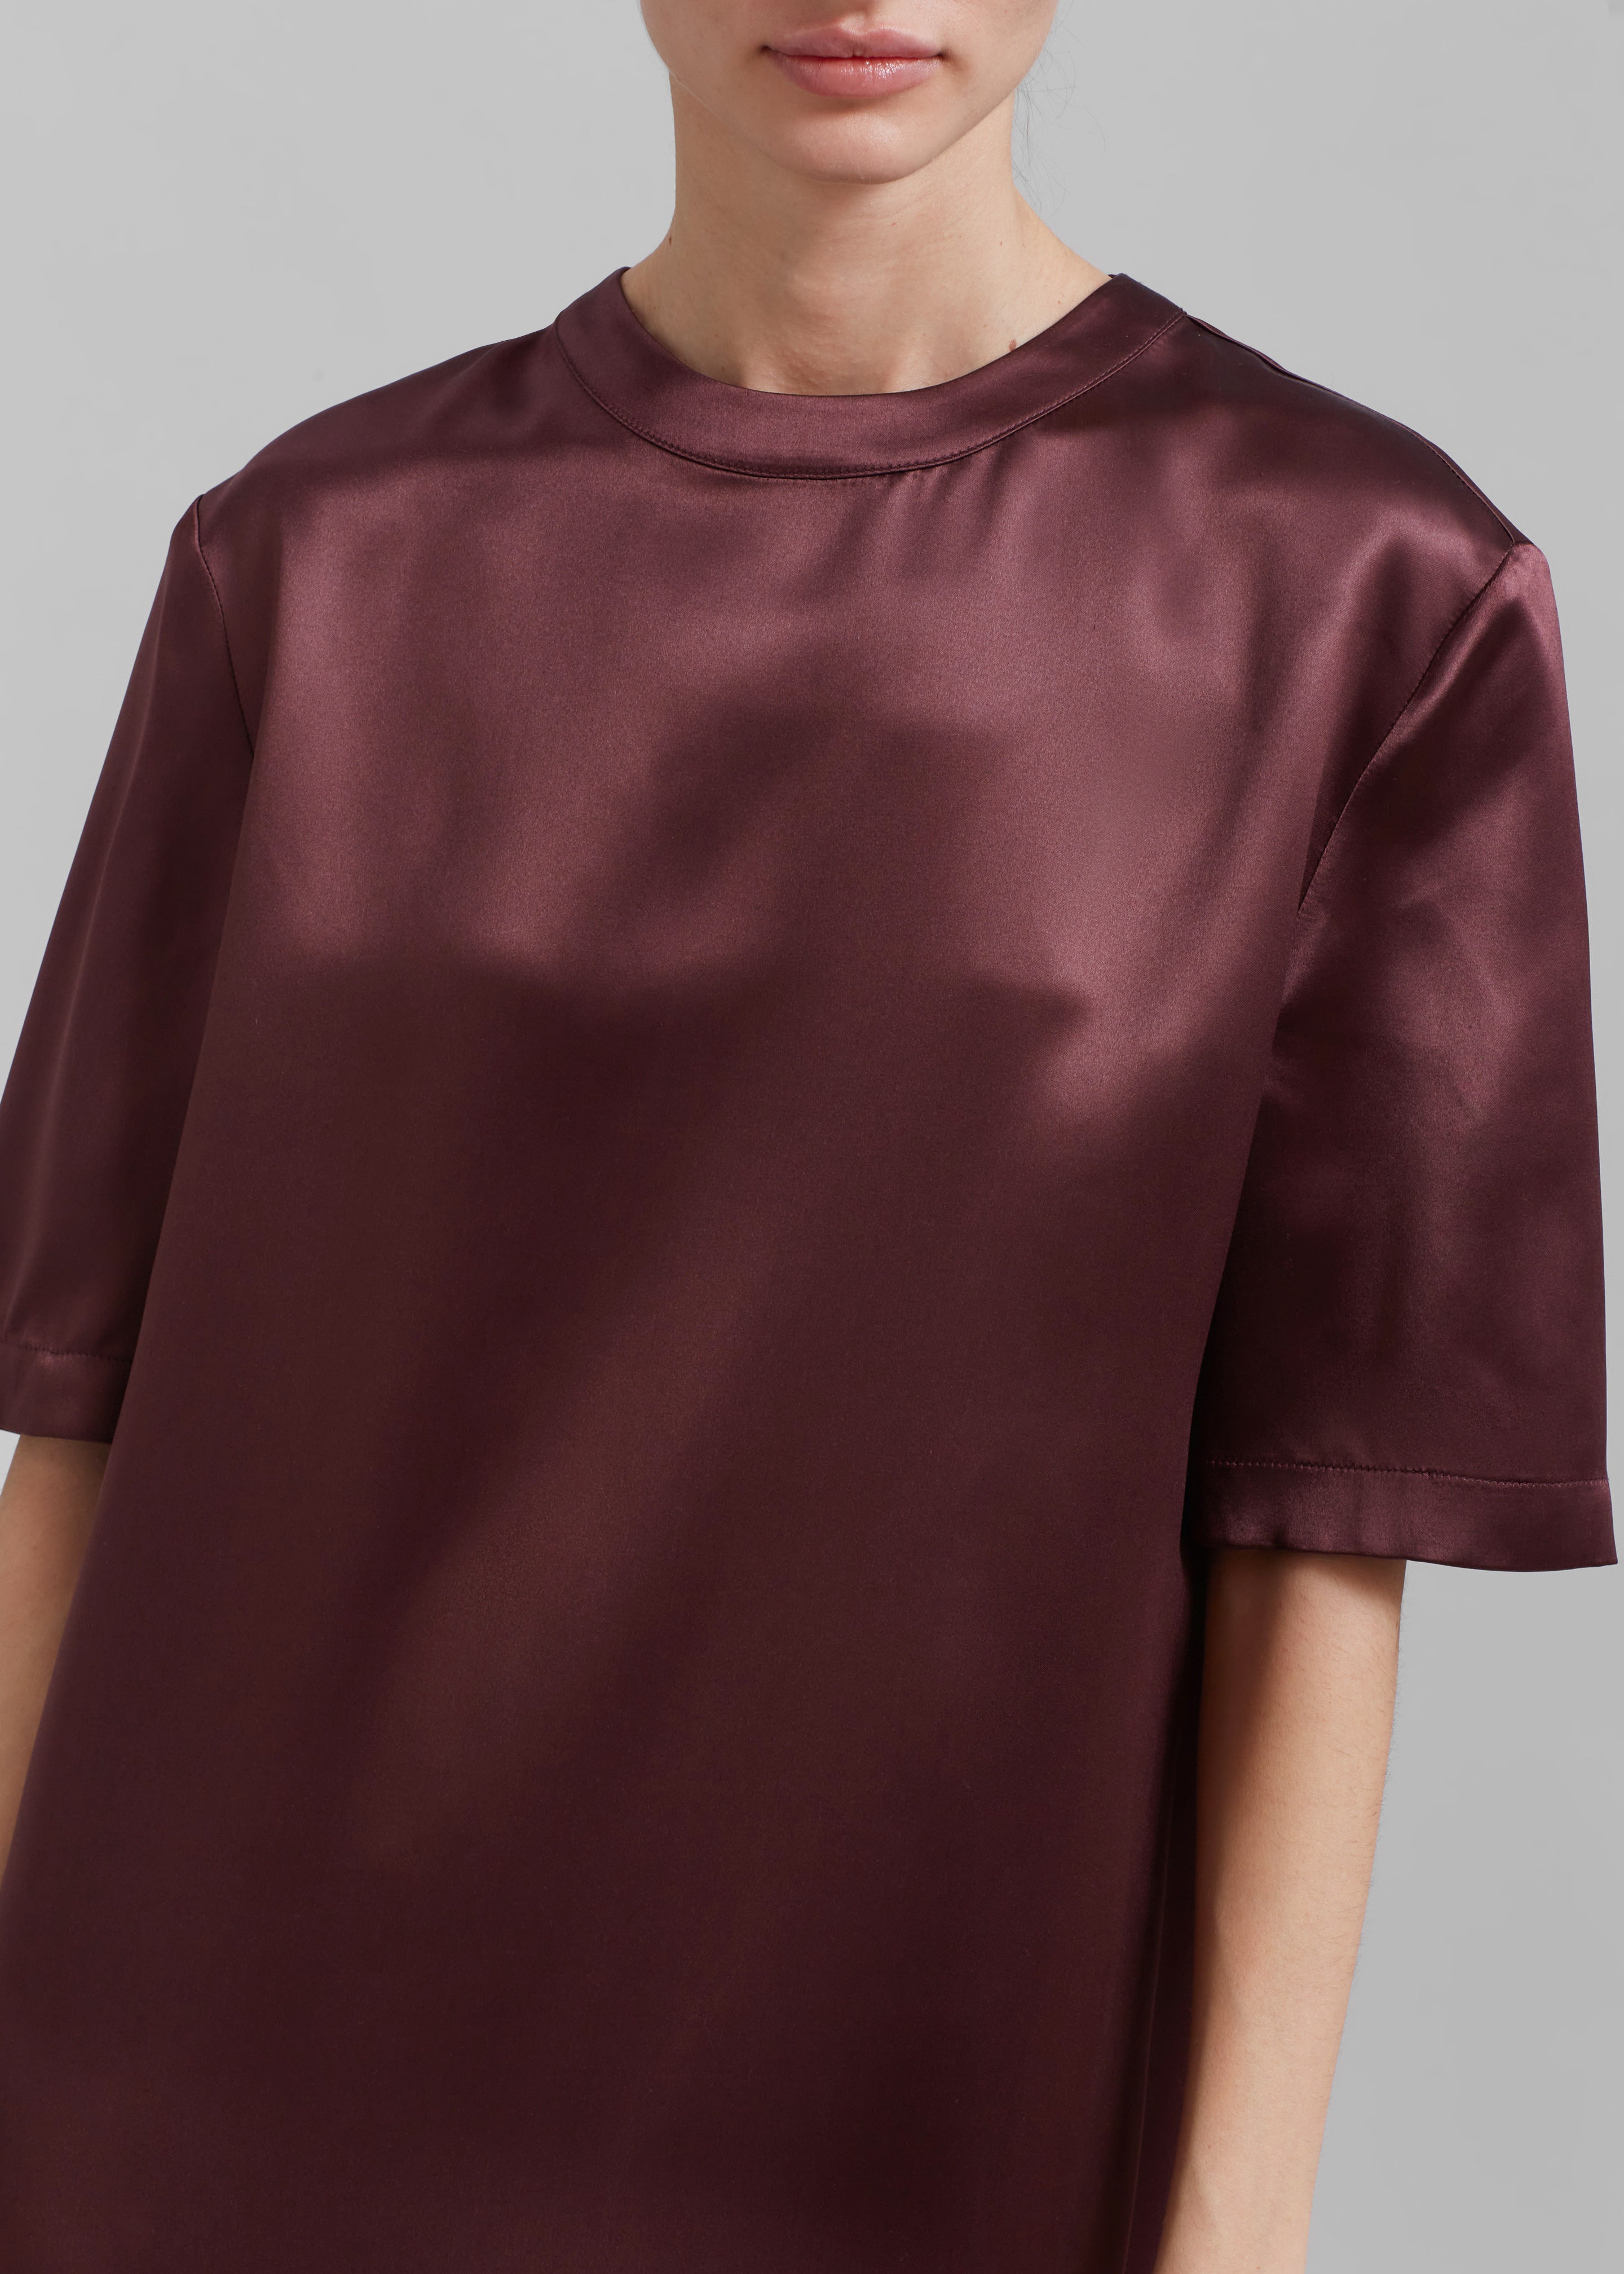 Loulou Studio Tuga Satin T-Shirt Dress - Midnight Bordeaux - 4